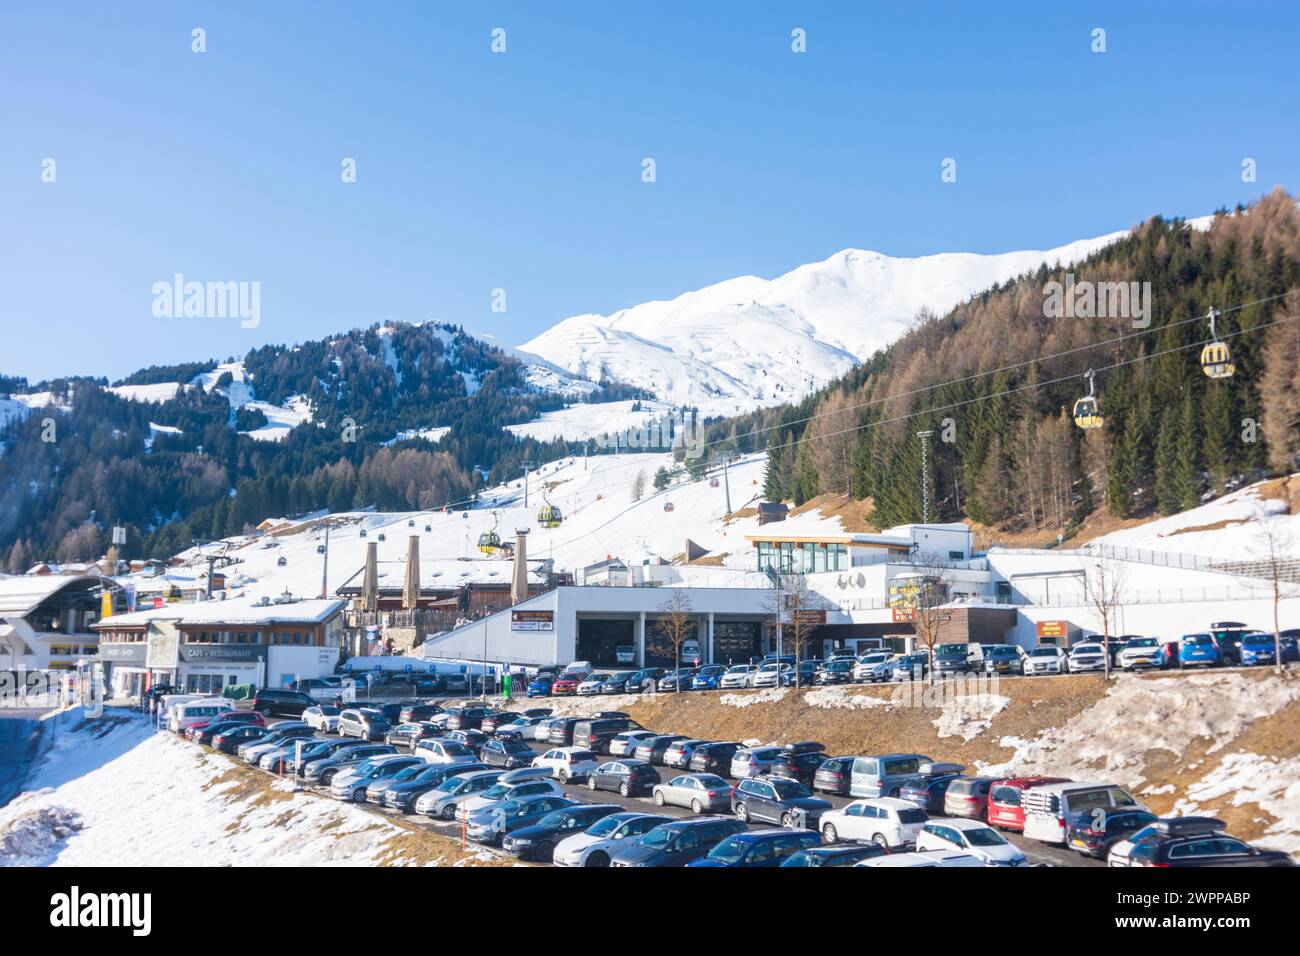 Fiss, remontées mécaniques, pistes de ski, ski alpin, Alpes Samnaun à Serfaus-Fiss-Ladis, Tyrol, Autriche Banque D'Images